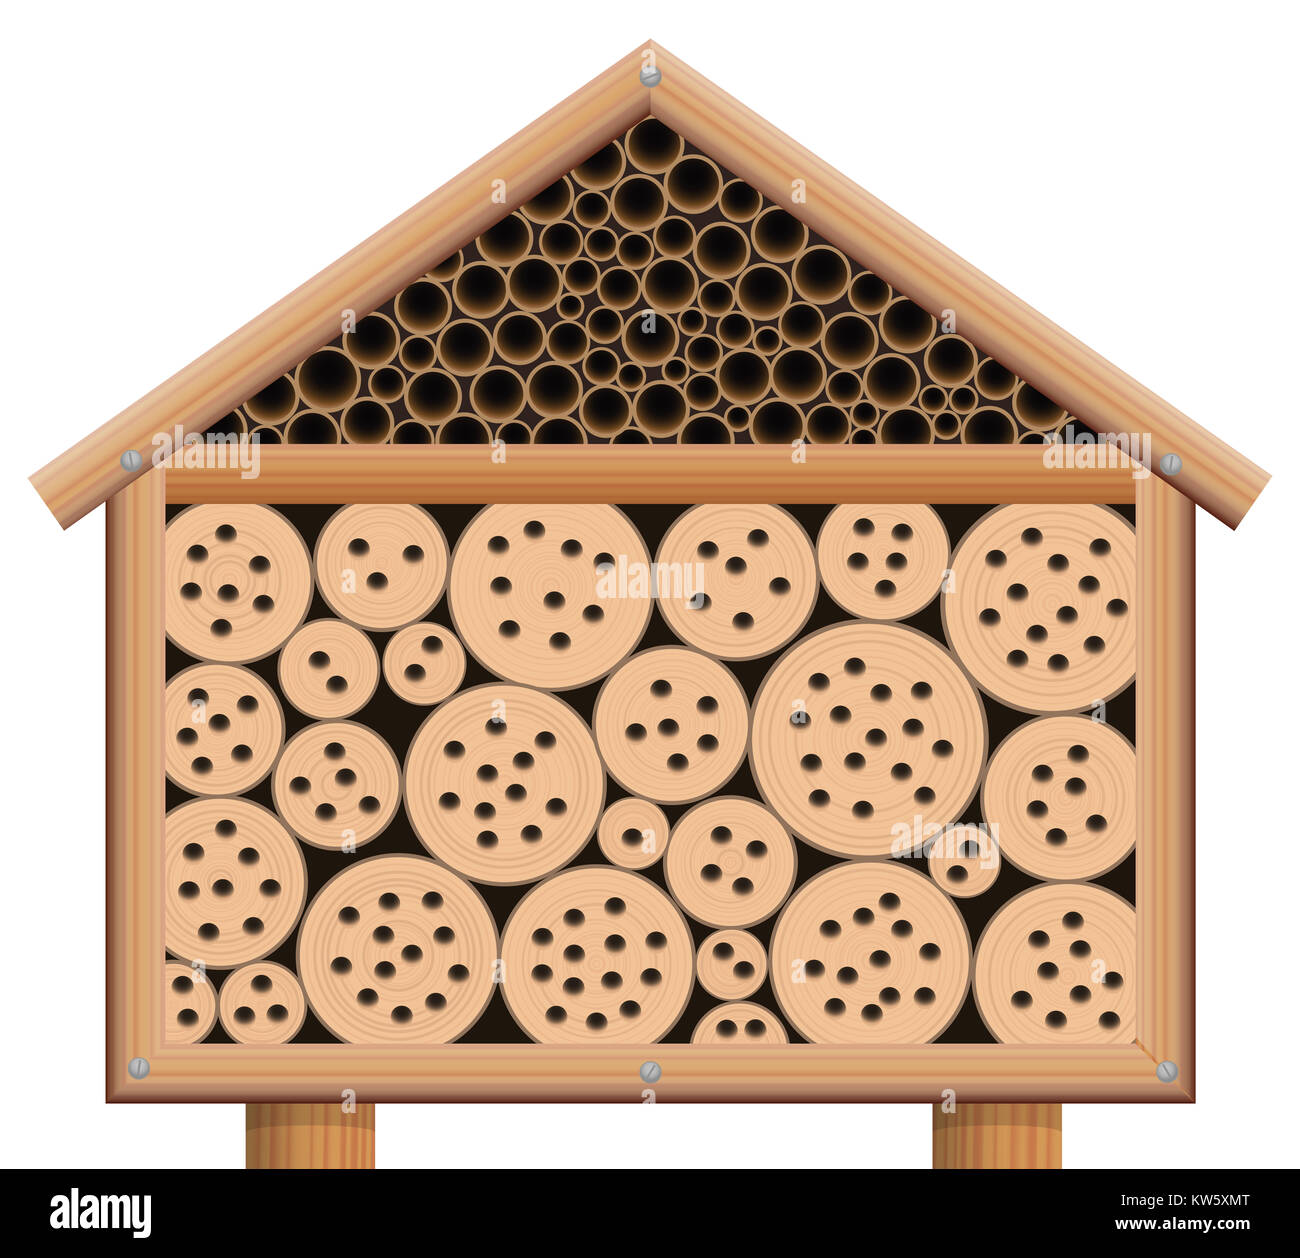 Hôtel - insectes bug en bois maison avec toit - illustration sur fond blanc. Banque D'Images